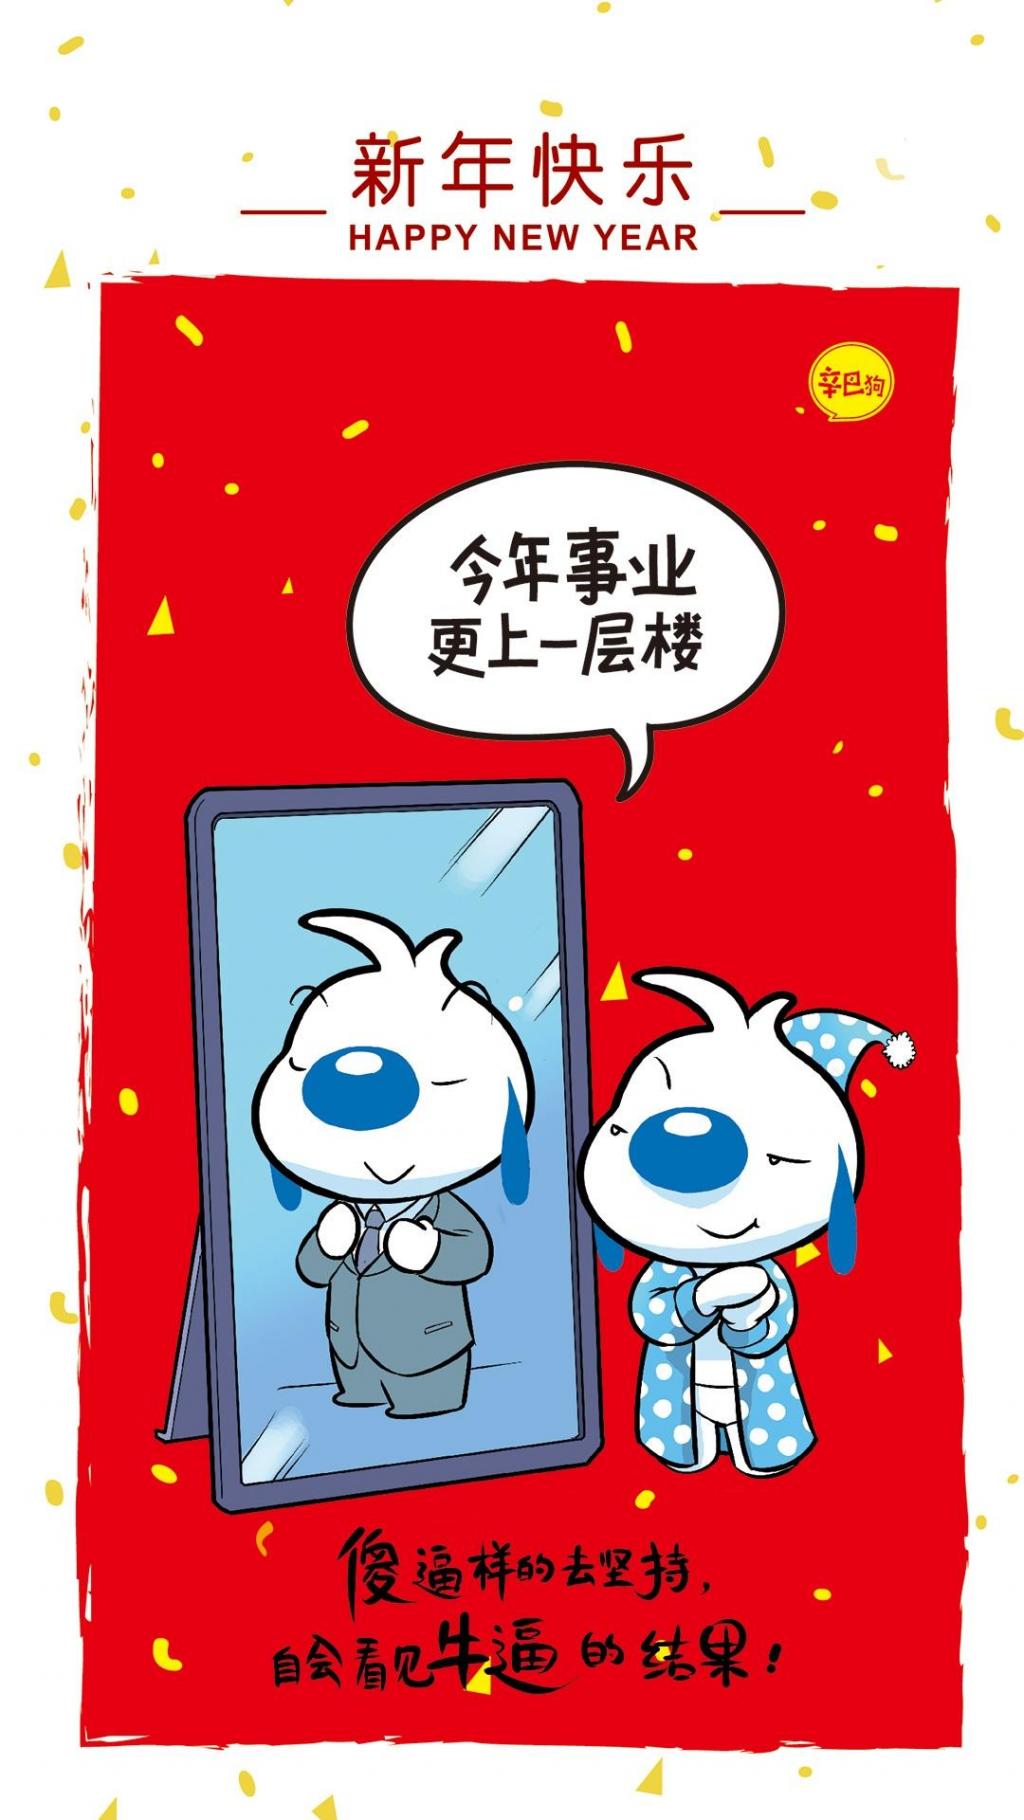 辛巴狗新年愿望:事业更上一层楼手机壁纸